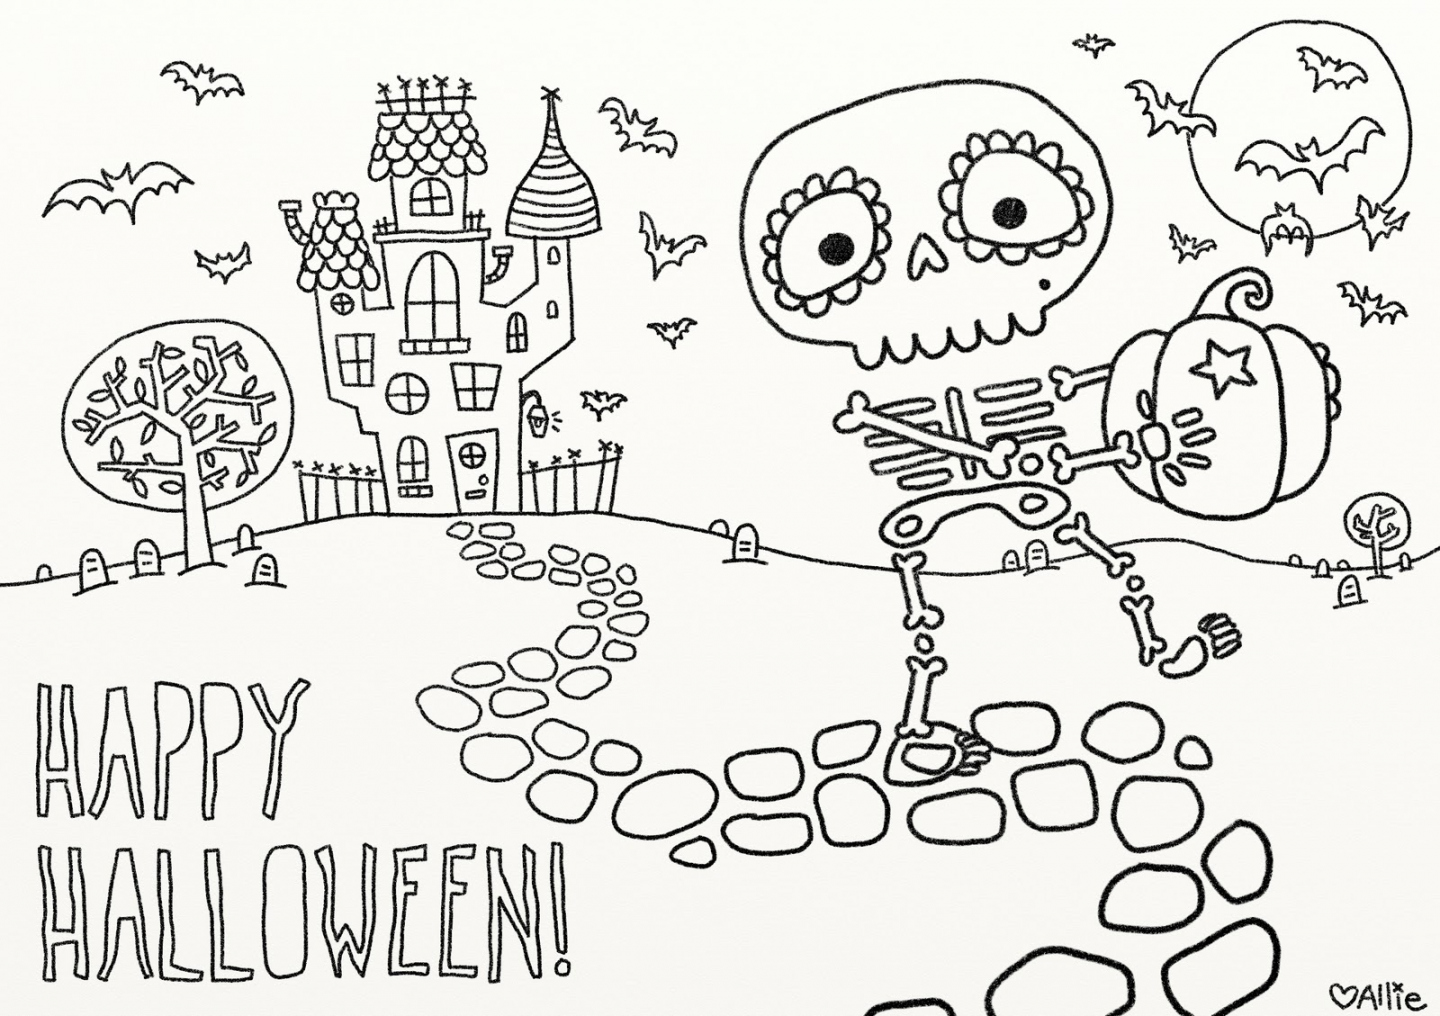 Free Printable Halloween Images - Printable -  fun free printable Halloween coloring pages